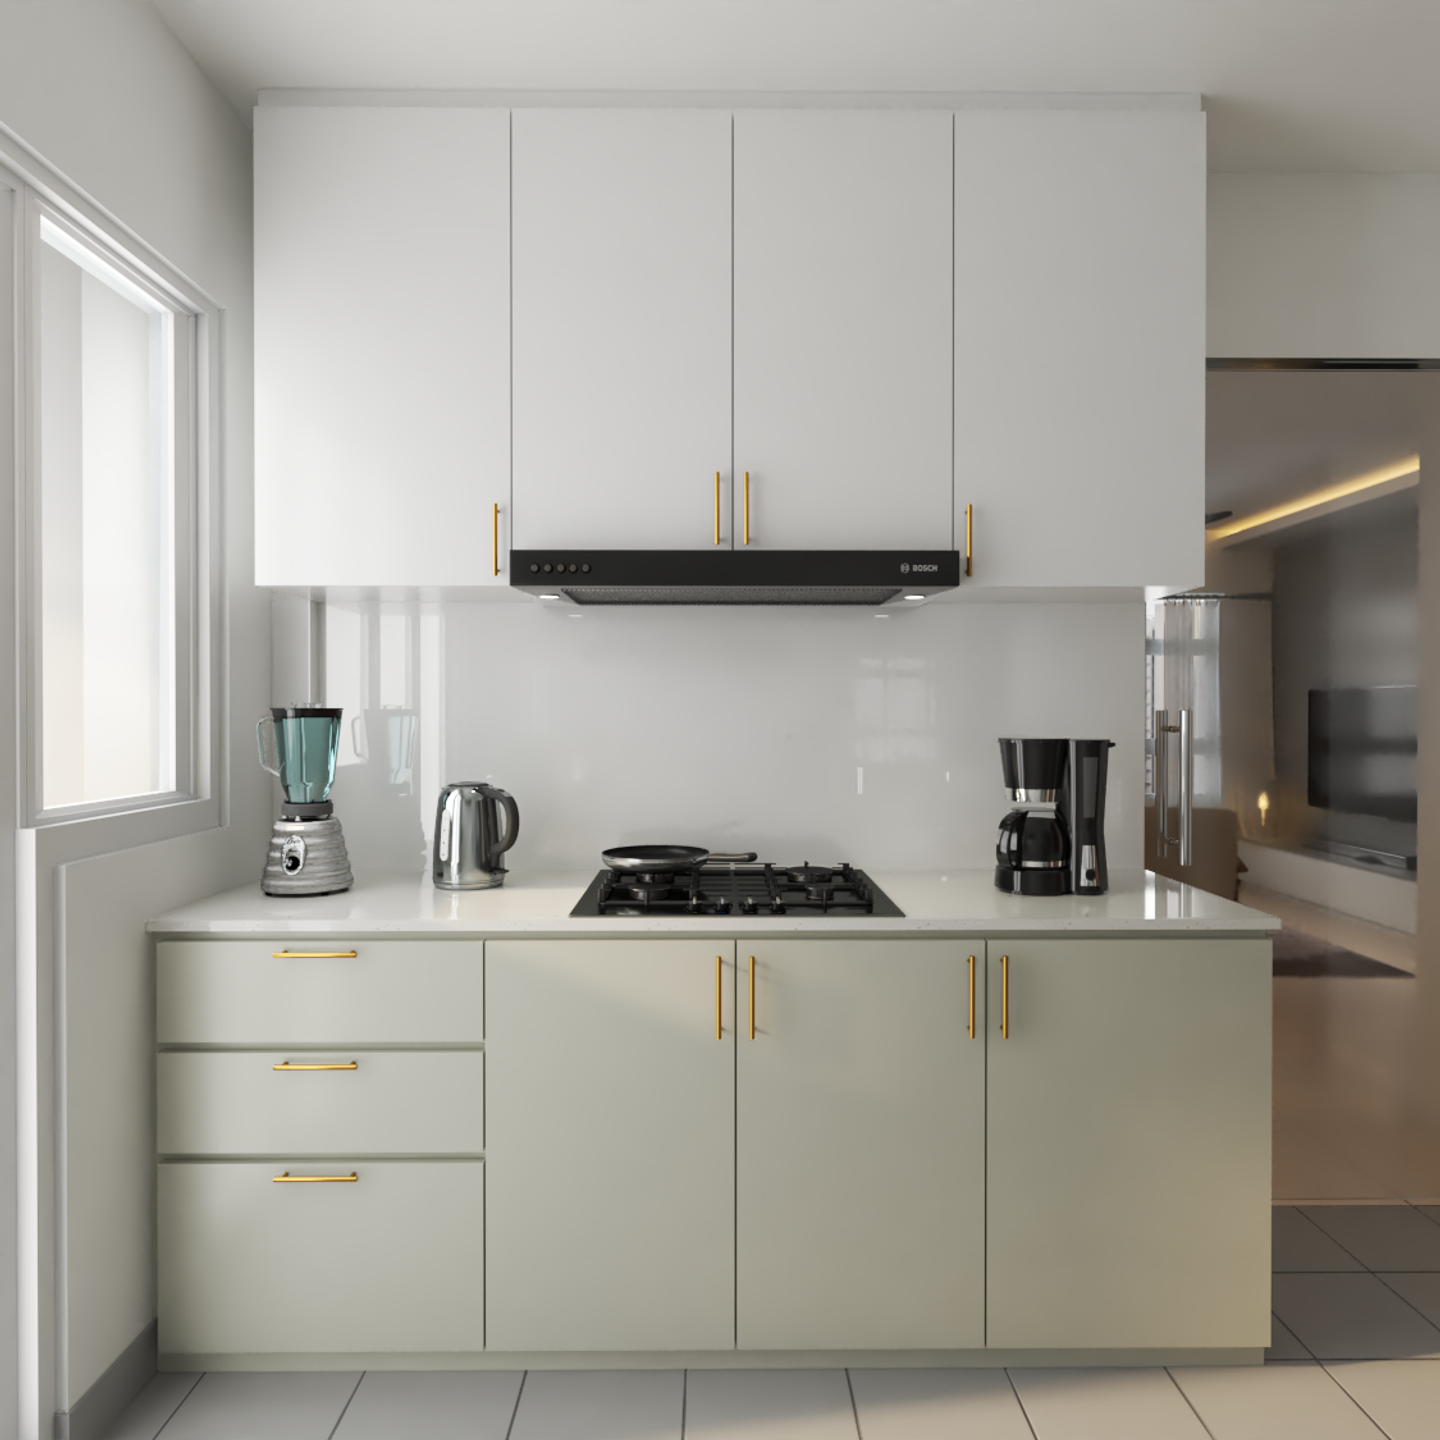 White Countertop Kitchen Design with Monochromatic Cabinets - Livspace